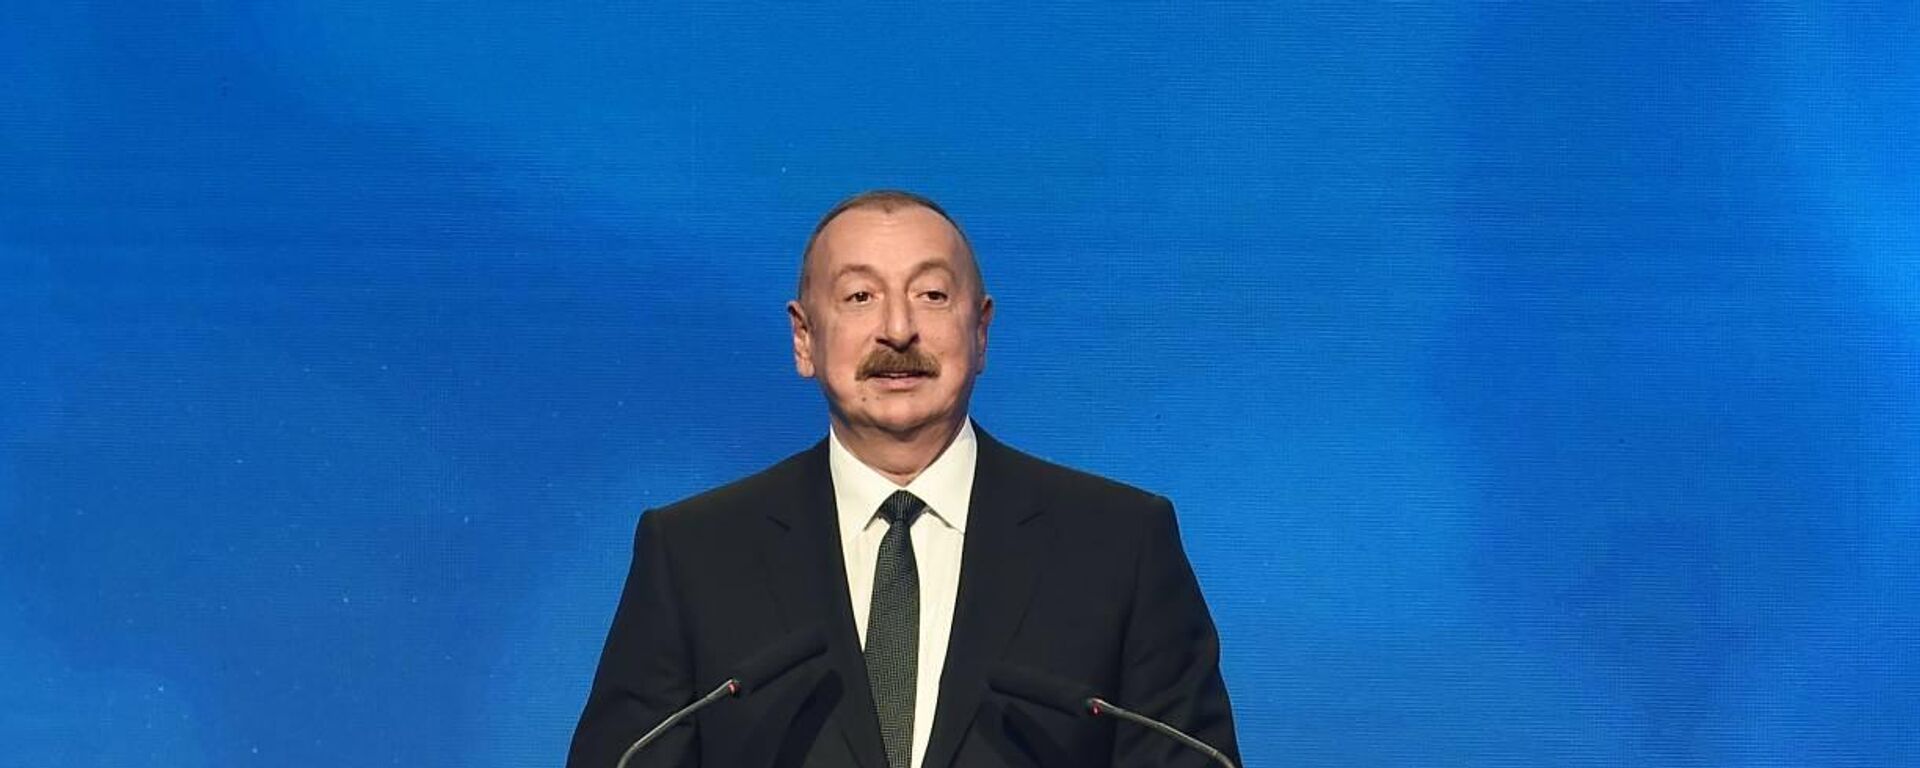 Ильхам Алиев принимает участие в церемонии открытия газового интерконнектора Греция-Болгария в Софии - Sputnik Azərbaycan, 1920, 01.10.2022